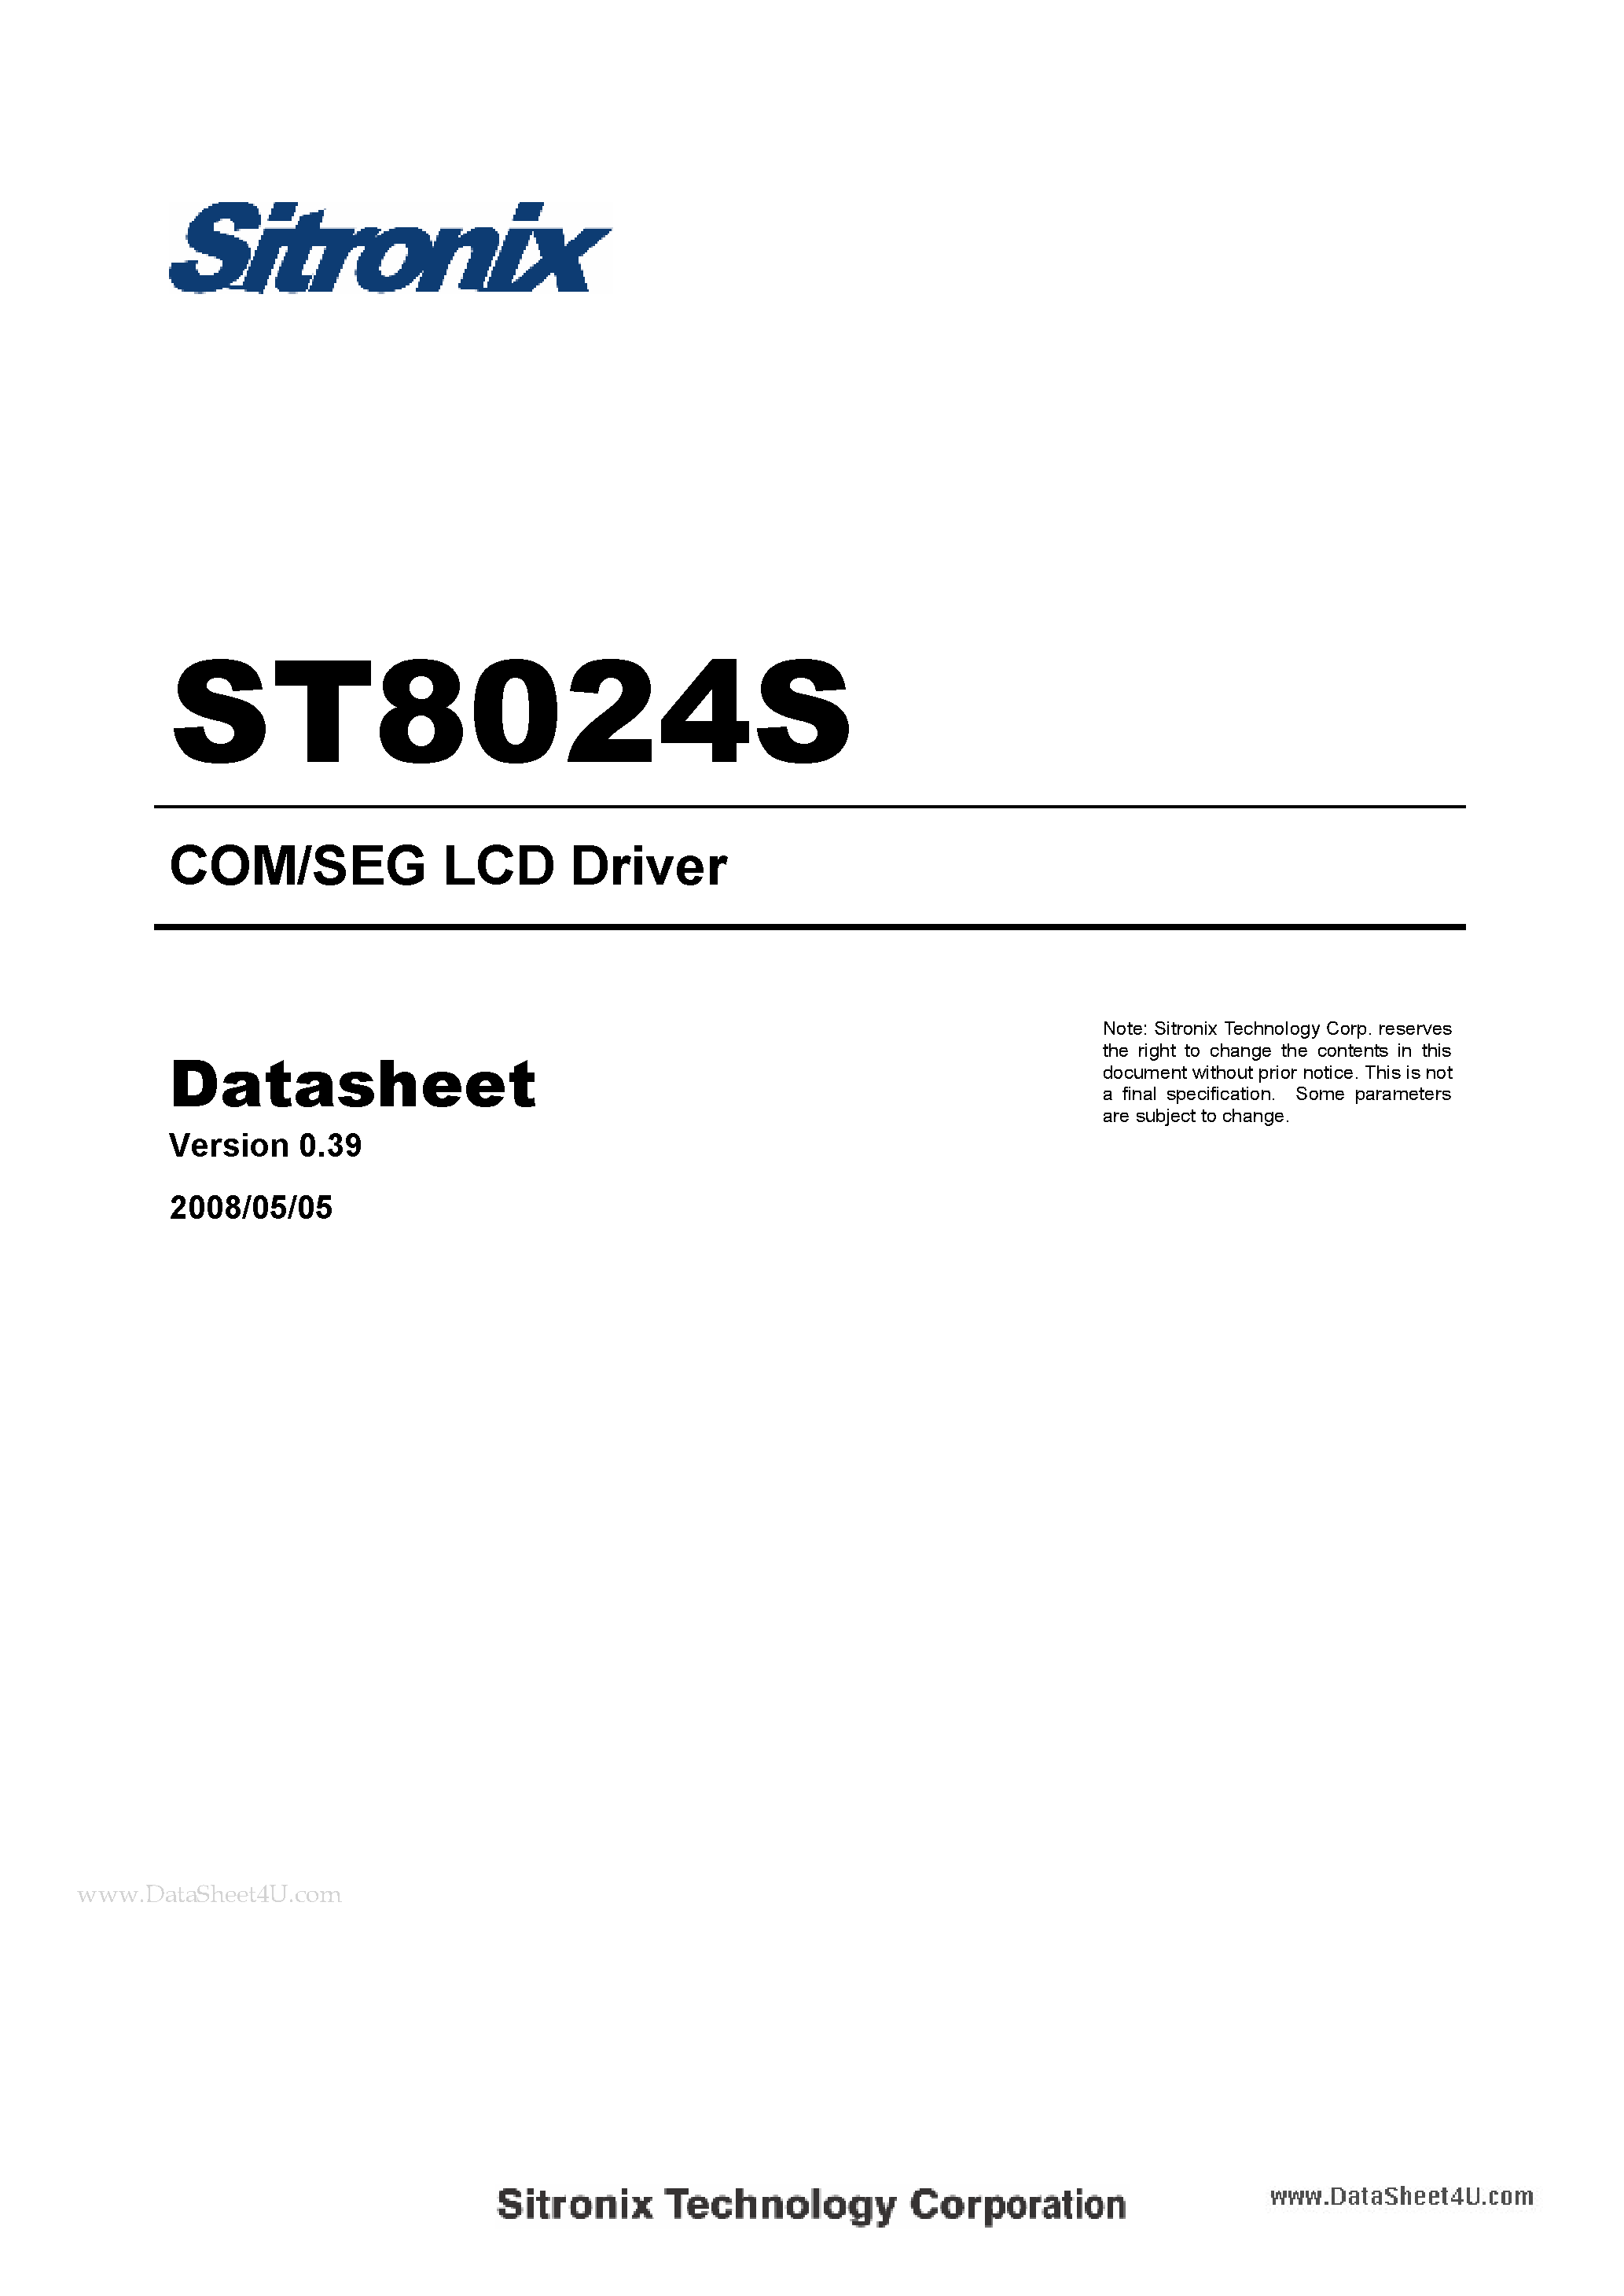 Даташит ST8024S - COM/SEG LCD Driver страница 1